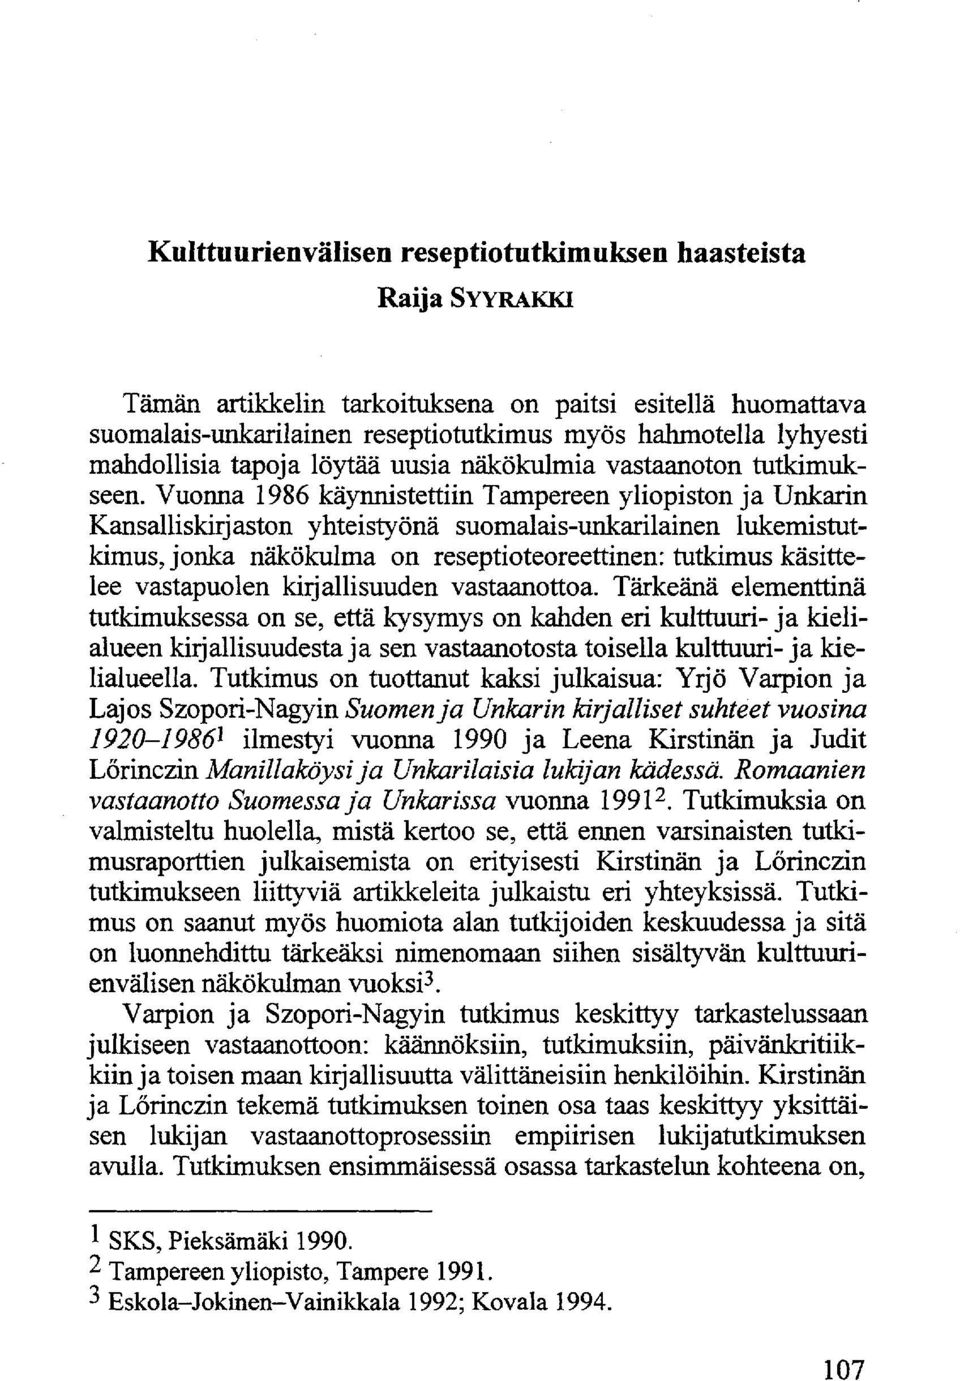 Vuonna 1986 käynnistettiin Tampereen yliopiston ja Unkarin Kansalliskirjaston yhteistyönä suomalais-unkarilainen lukemistutkimus, jonka näkökulma on reseptioteoreettinen: tutkimus käsittelee